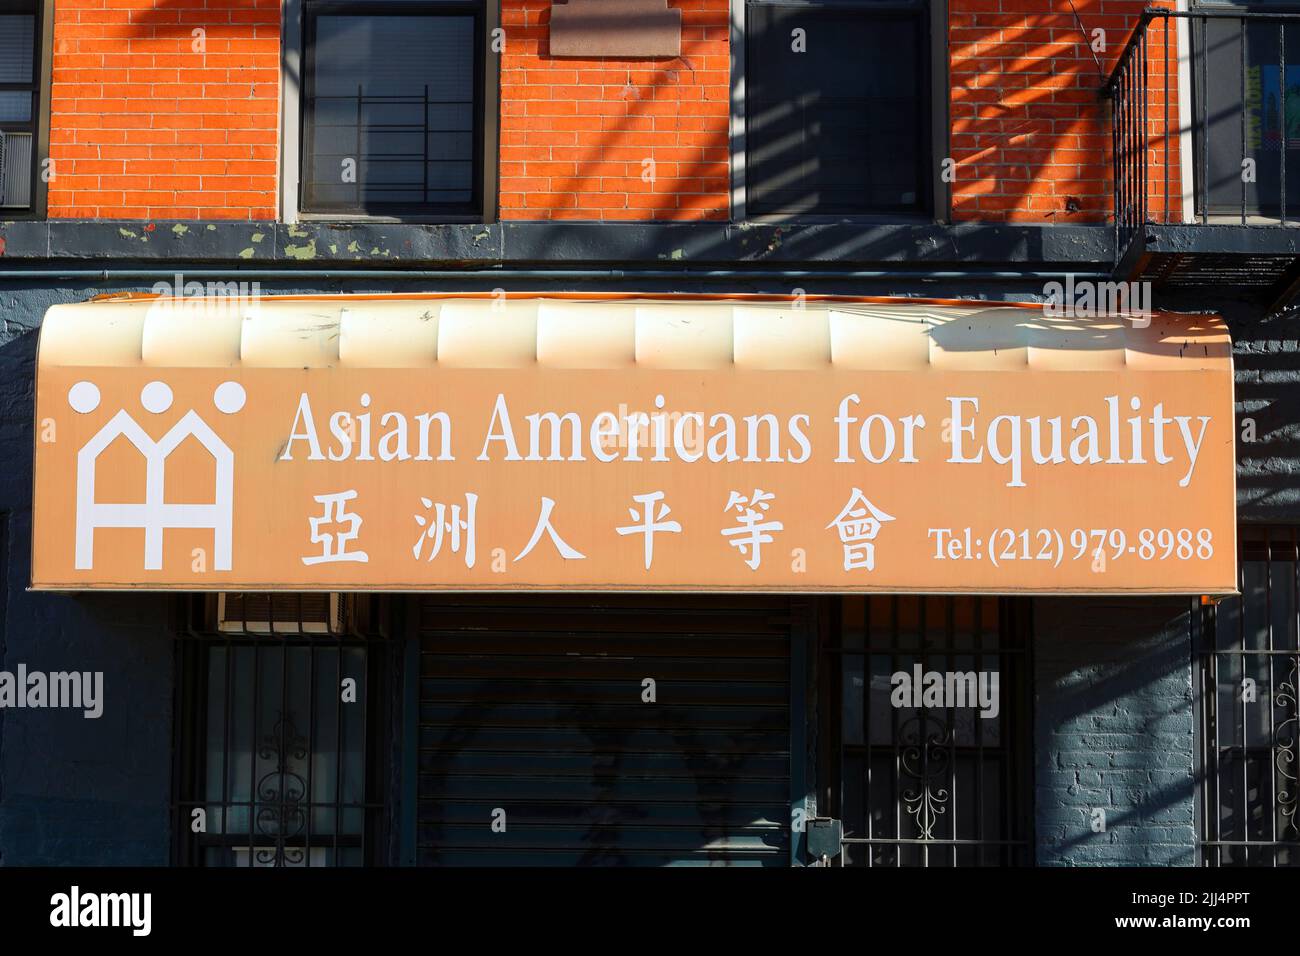 Asian Americans for Equality 亞洲人平等會. Beschilderung für eine asiatisch-amerikanische Organisation für Bürgerrechte, soziale Gerechtigkeit und Gemeindeentwicklung. Stockfoto